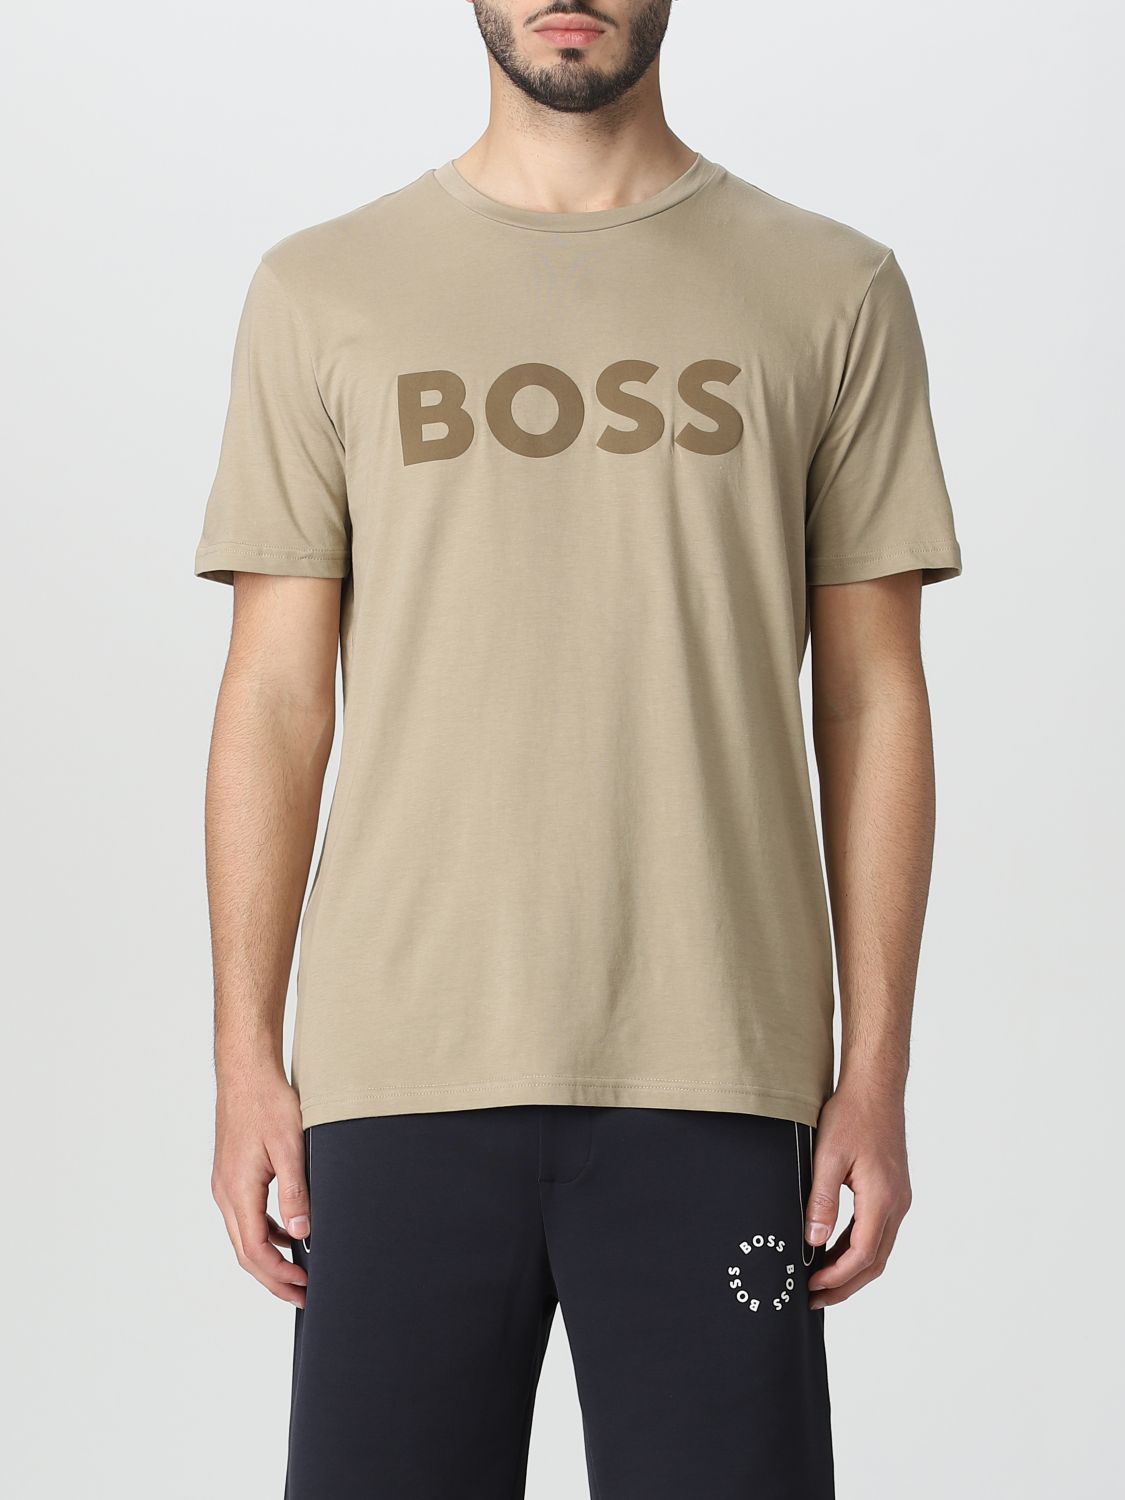 Hugo Boss T-shirt Boss Men Color Beige